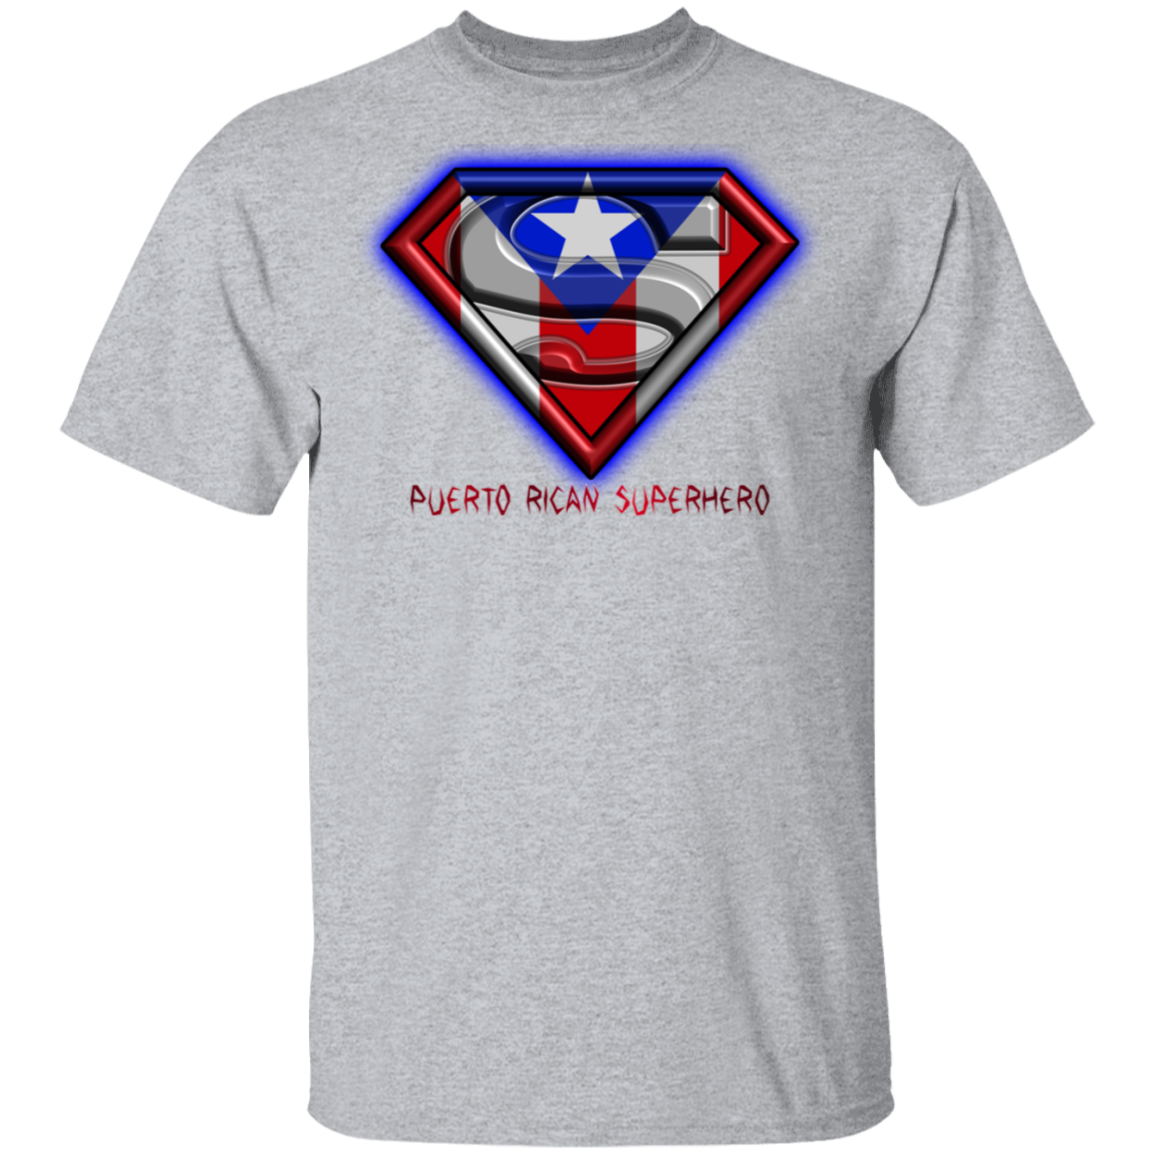 Puerto Rican Superhero T-Shirt - Puerto Rican Pride